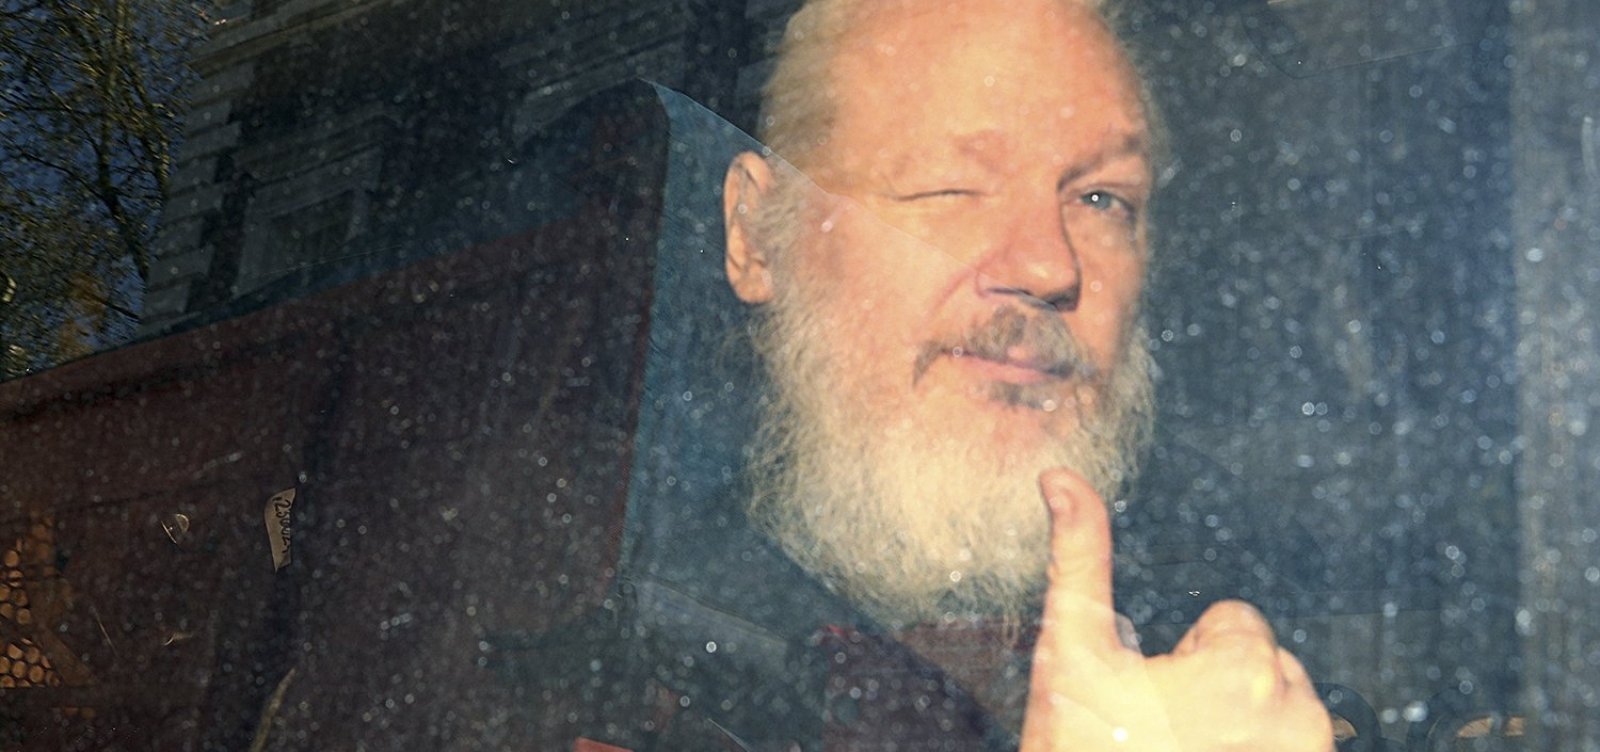 Equador sofre 40 milhões de ciberataques após prisão de Assange